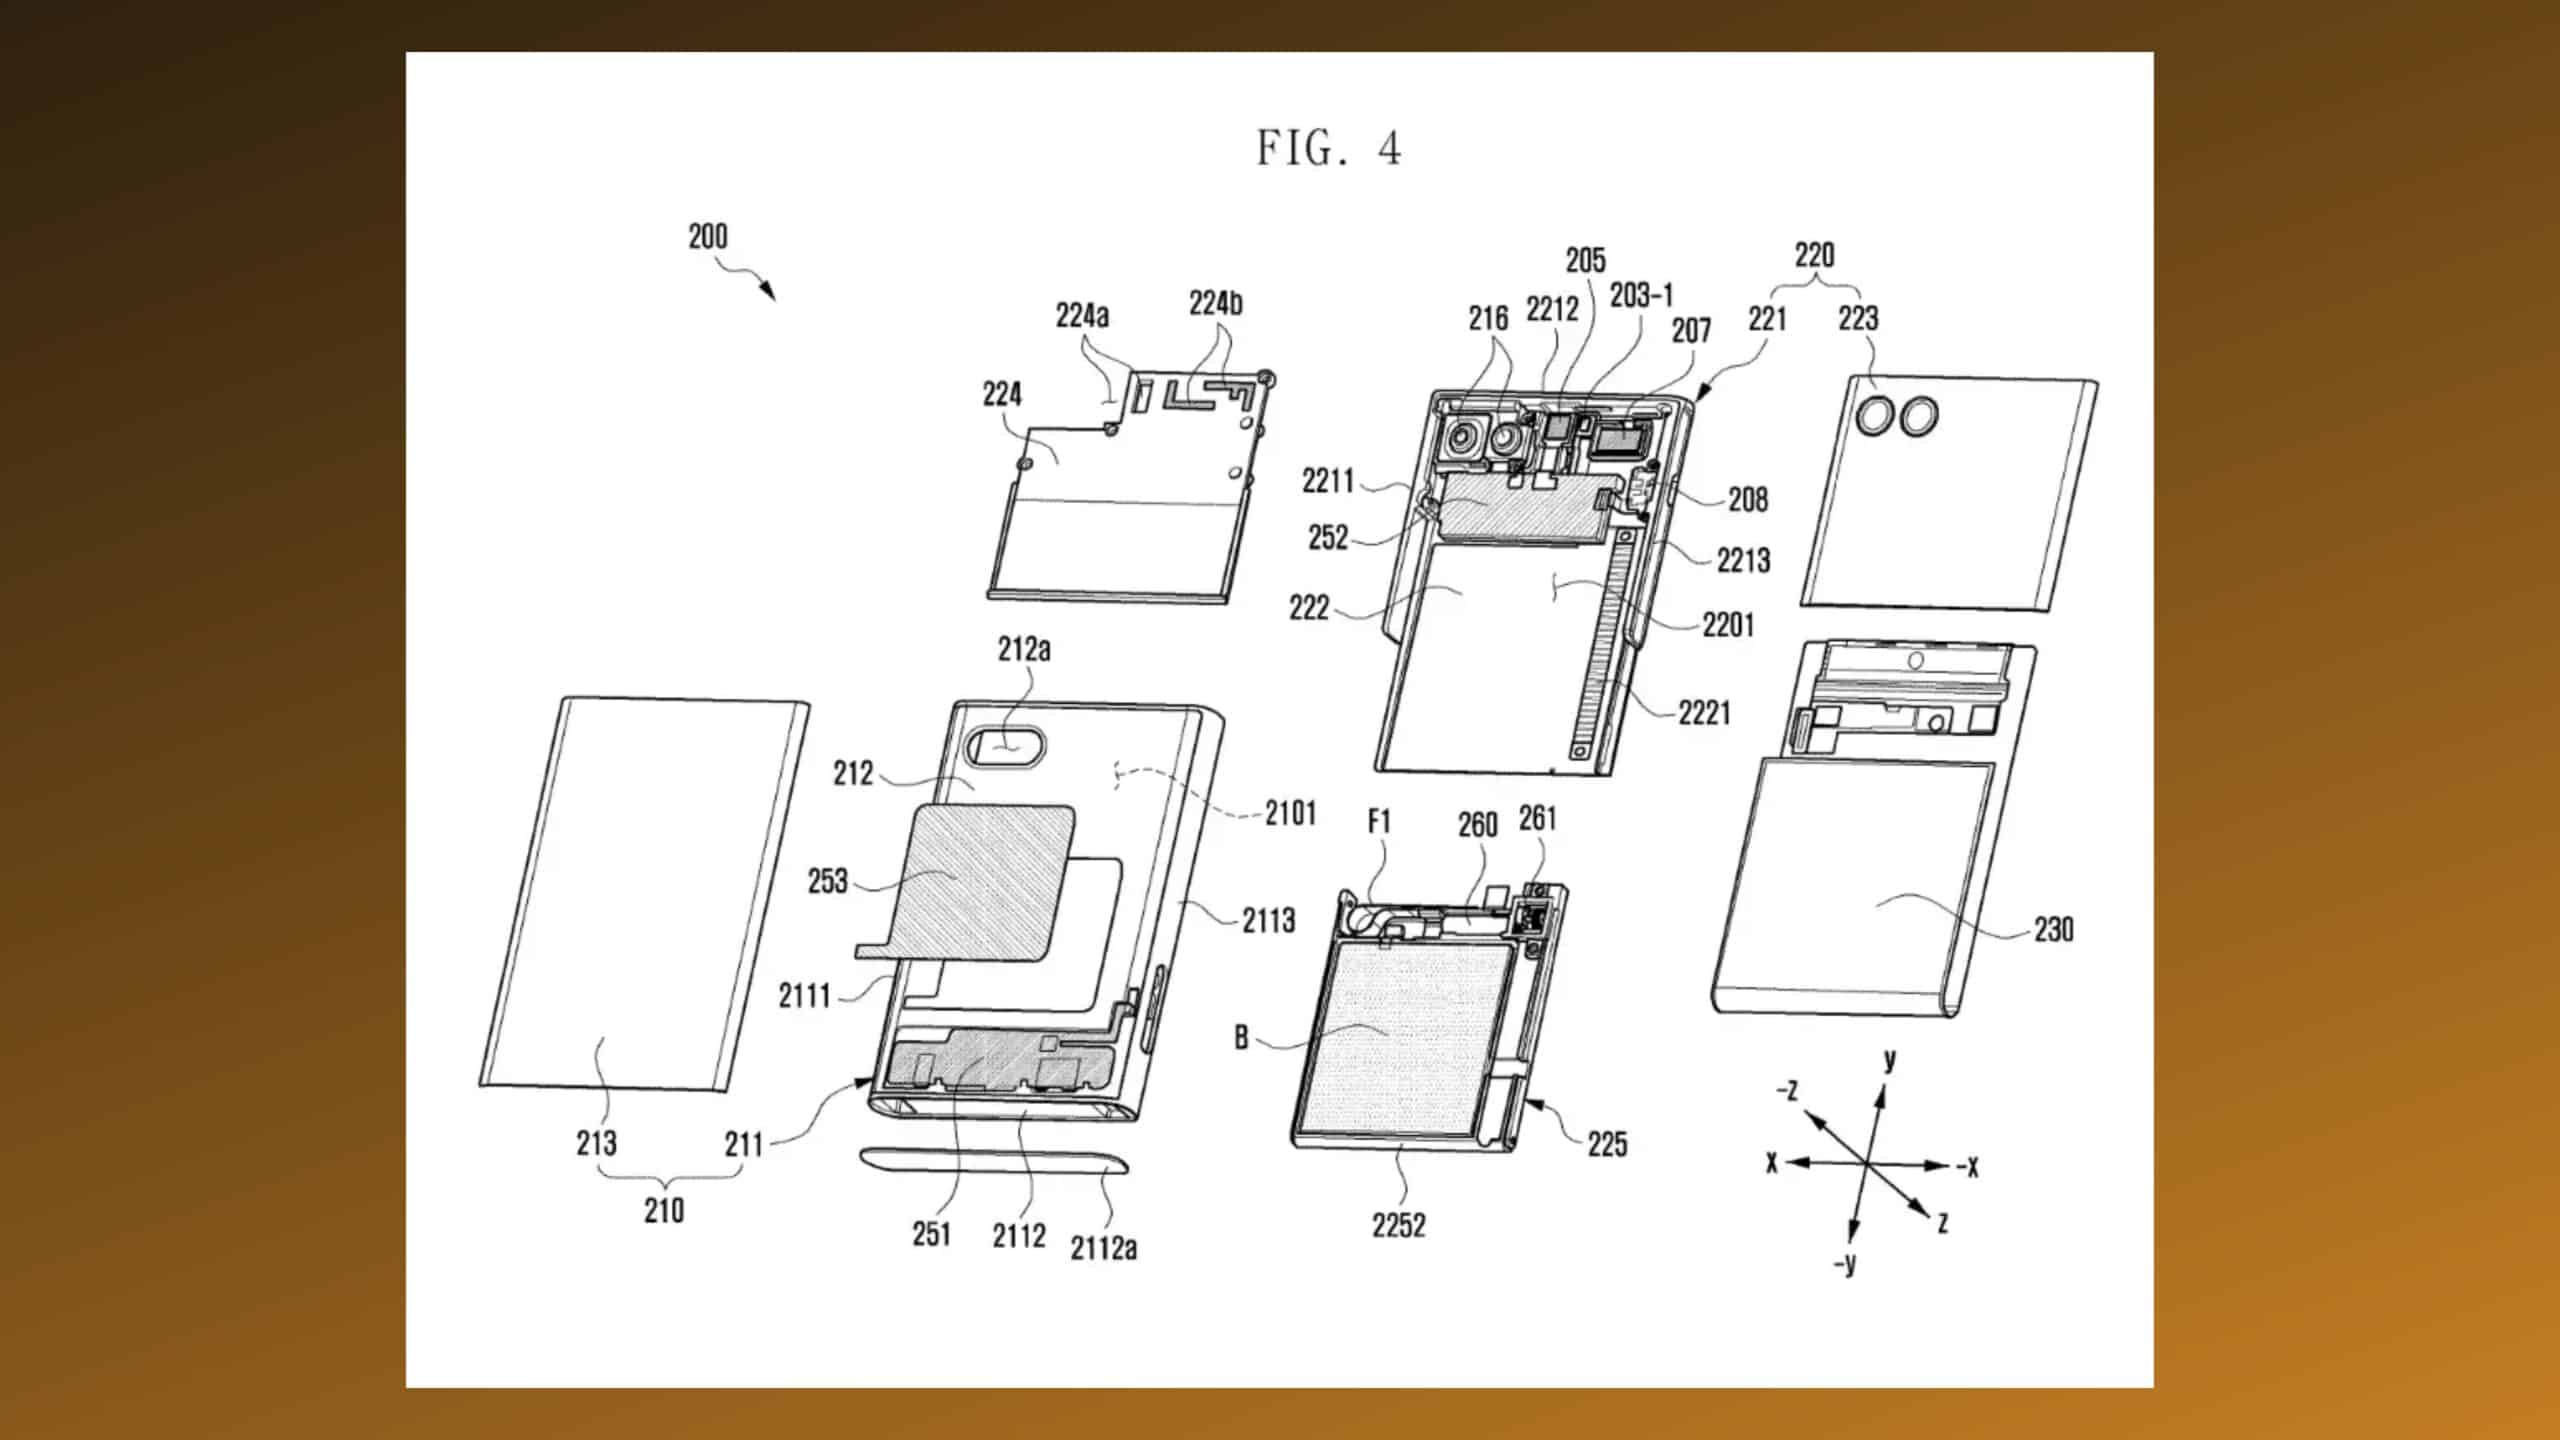 patente-de-smartphone-rolavel-samsung-aprovada